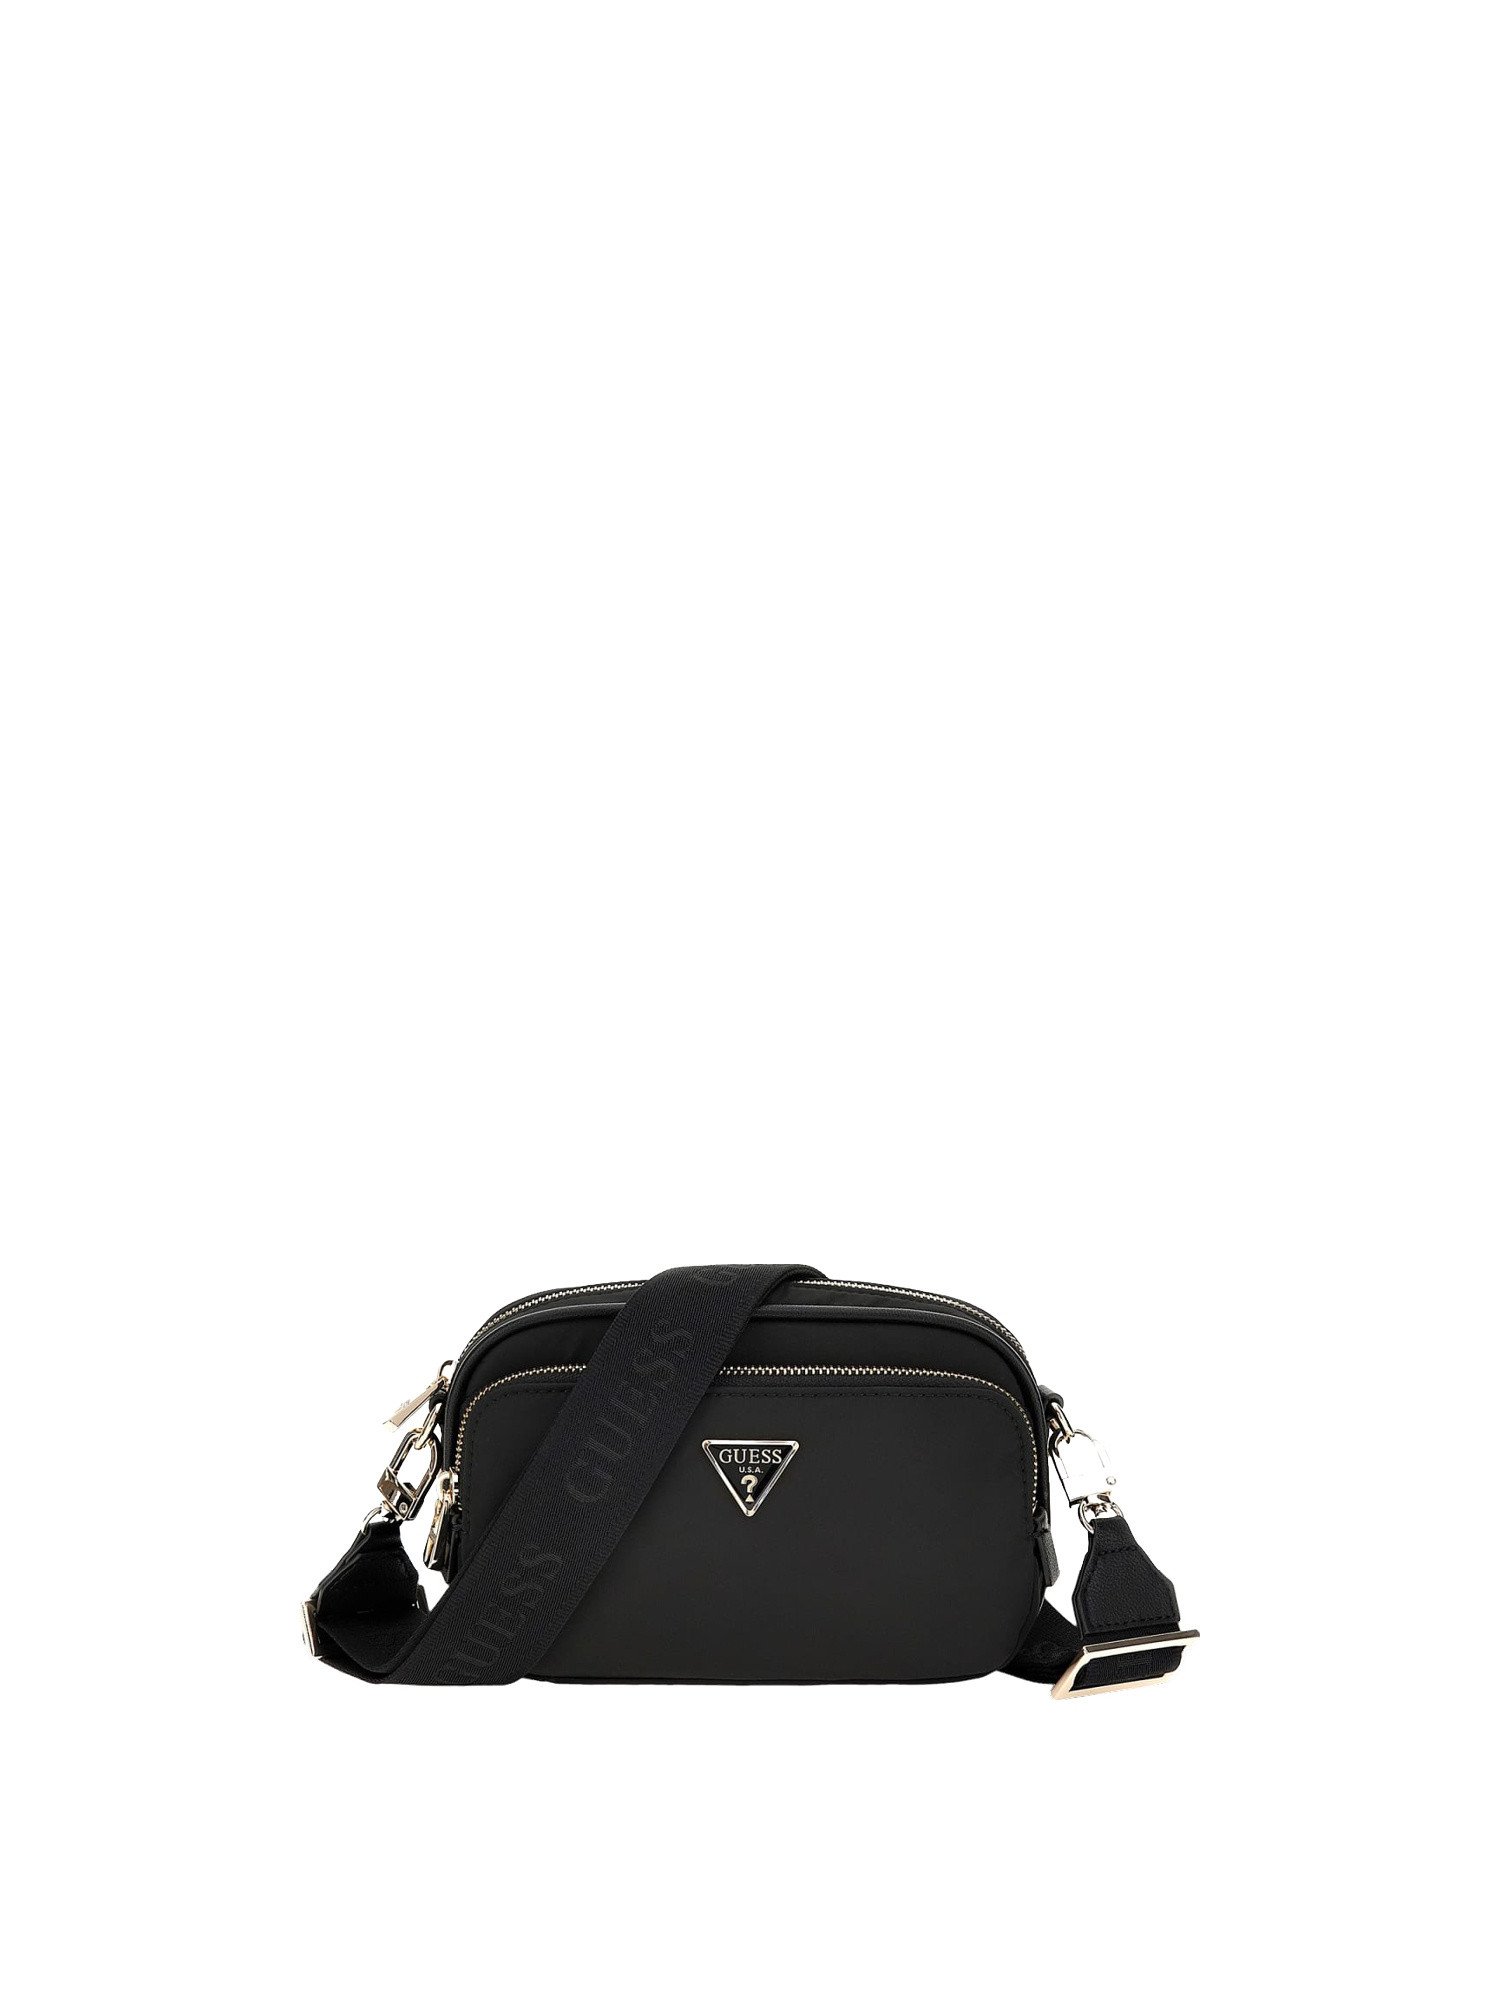 Guess - Gemma eco mini shoulder bag, Black, large image number 0